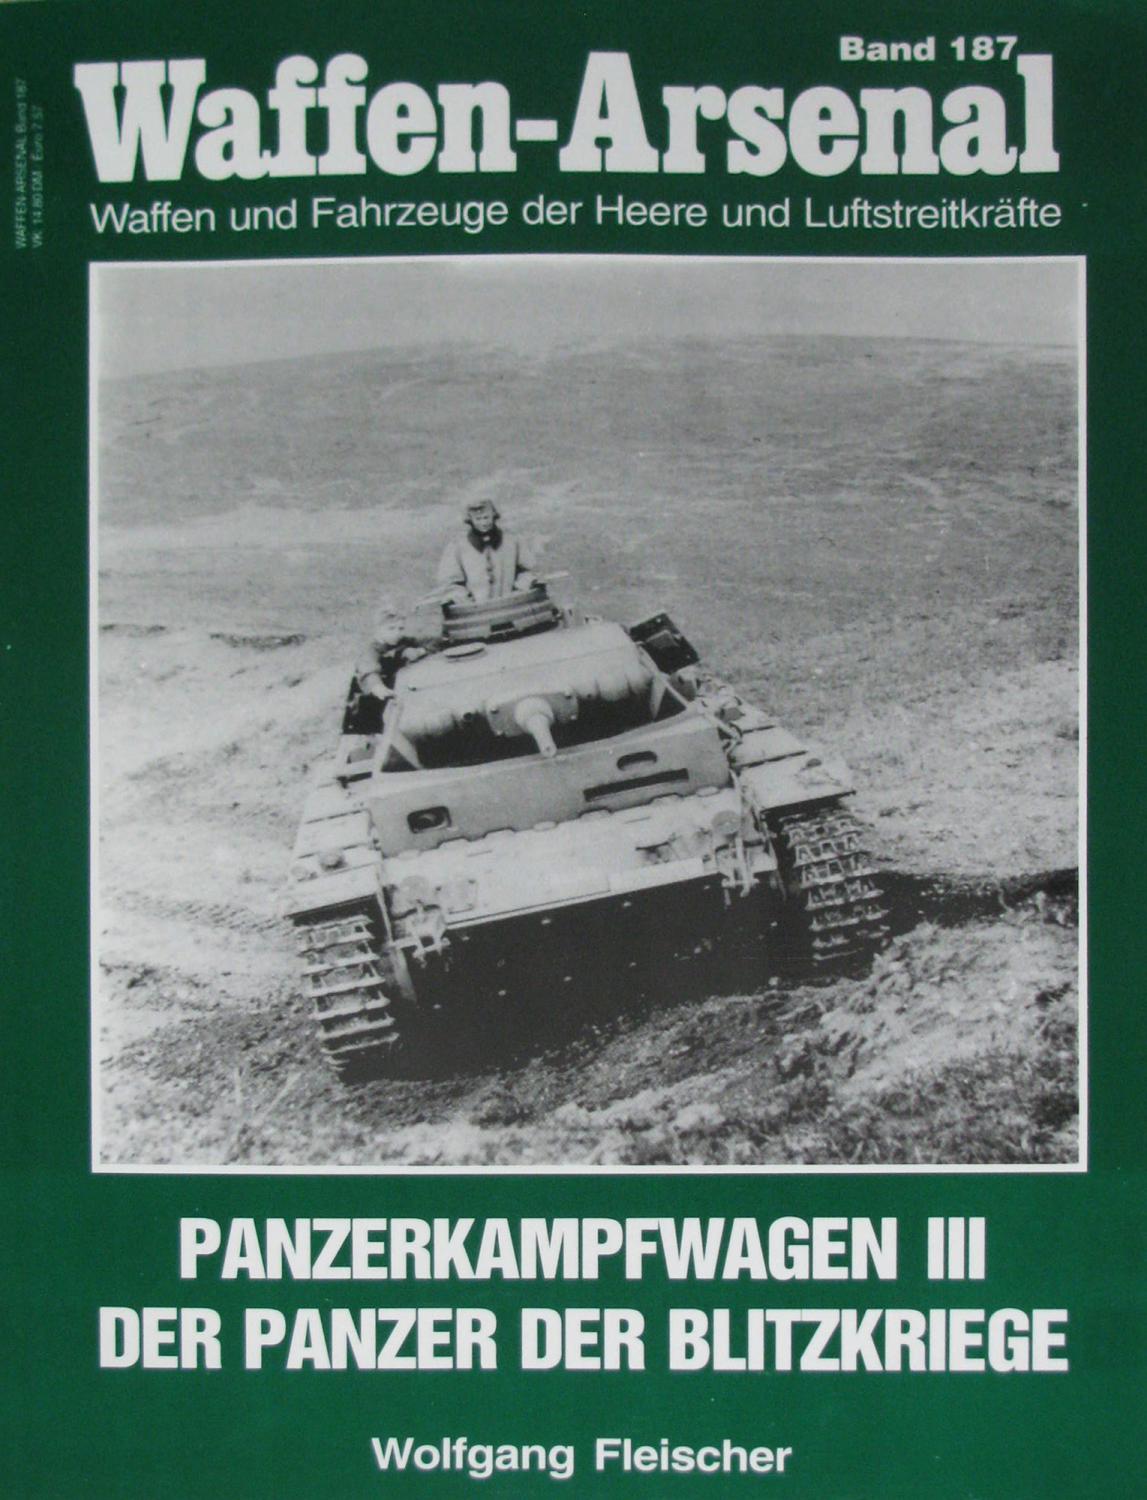 Panzerkampfwagen III. Der Panzer der Blitzkriege (Waffen-Arsenal. Band 187), - Fleischer, Wolfgang